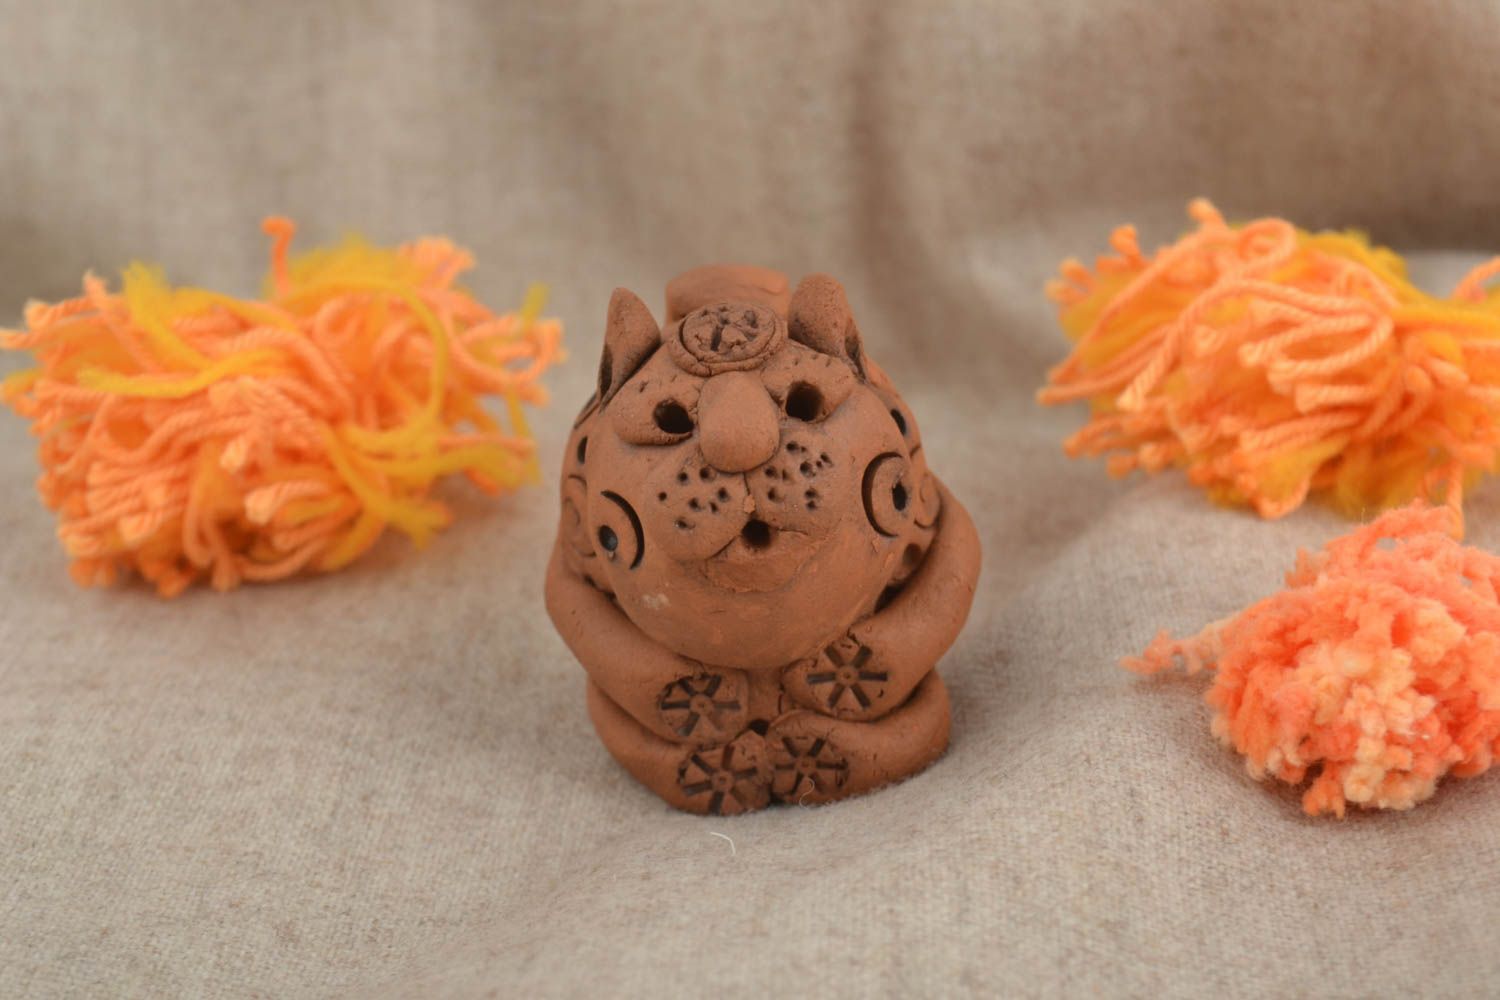 Figurina fatta a mano in ceramica animaletto divertente souvenir di terracotta foto 1